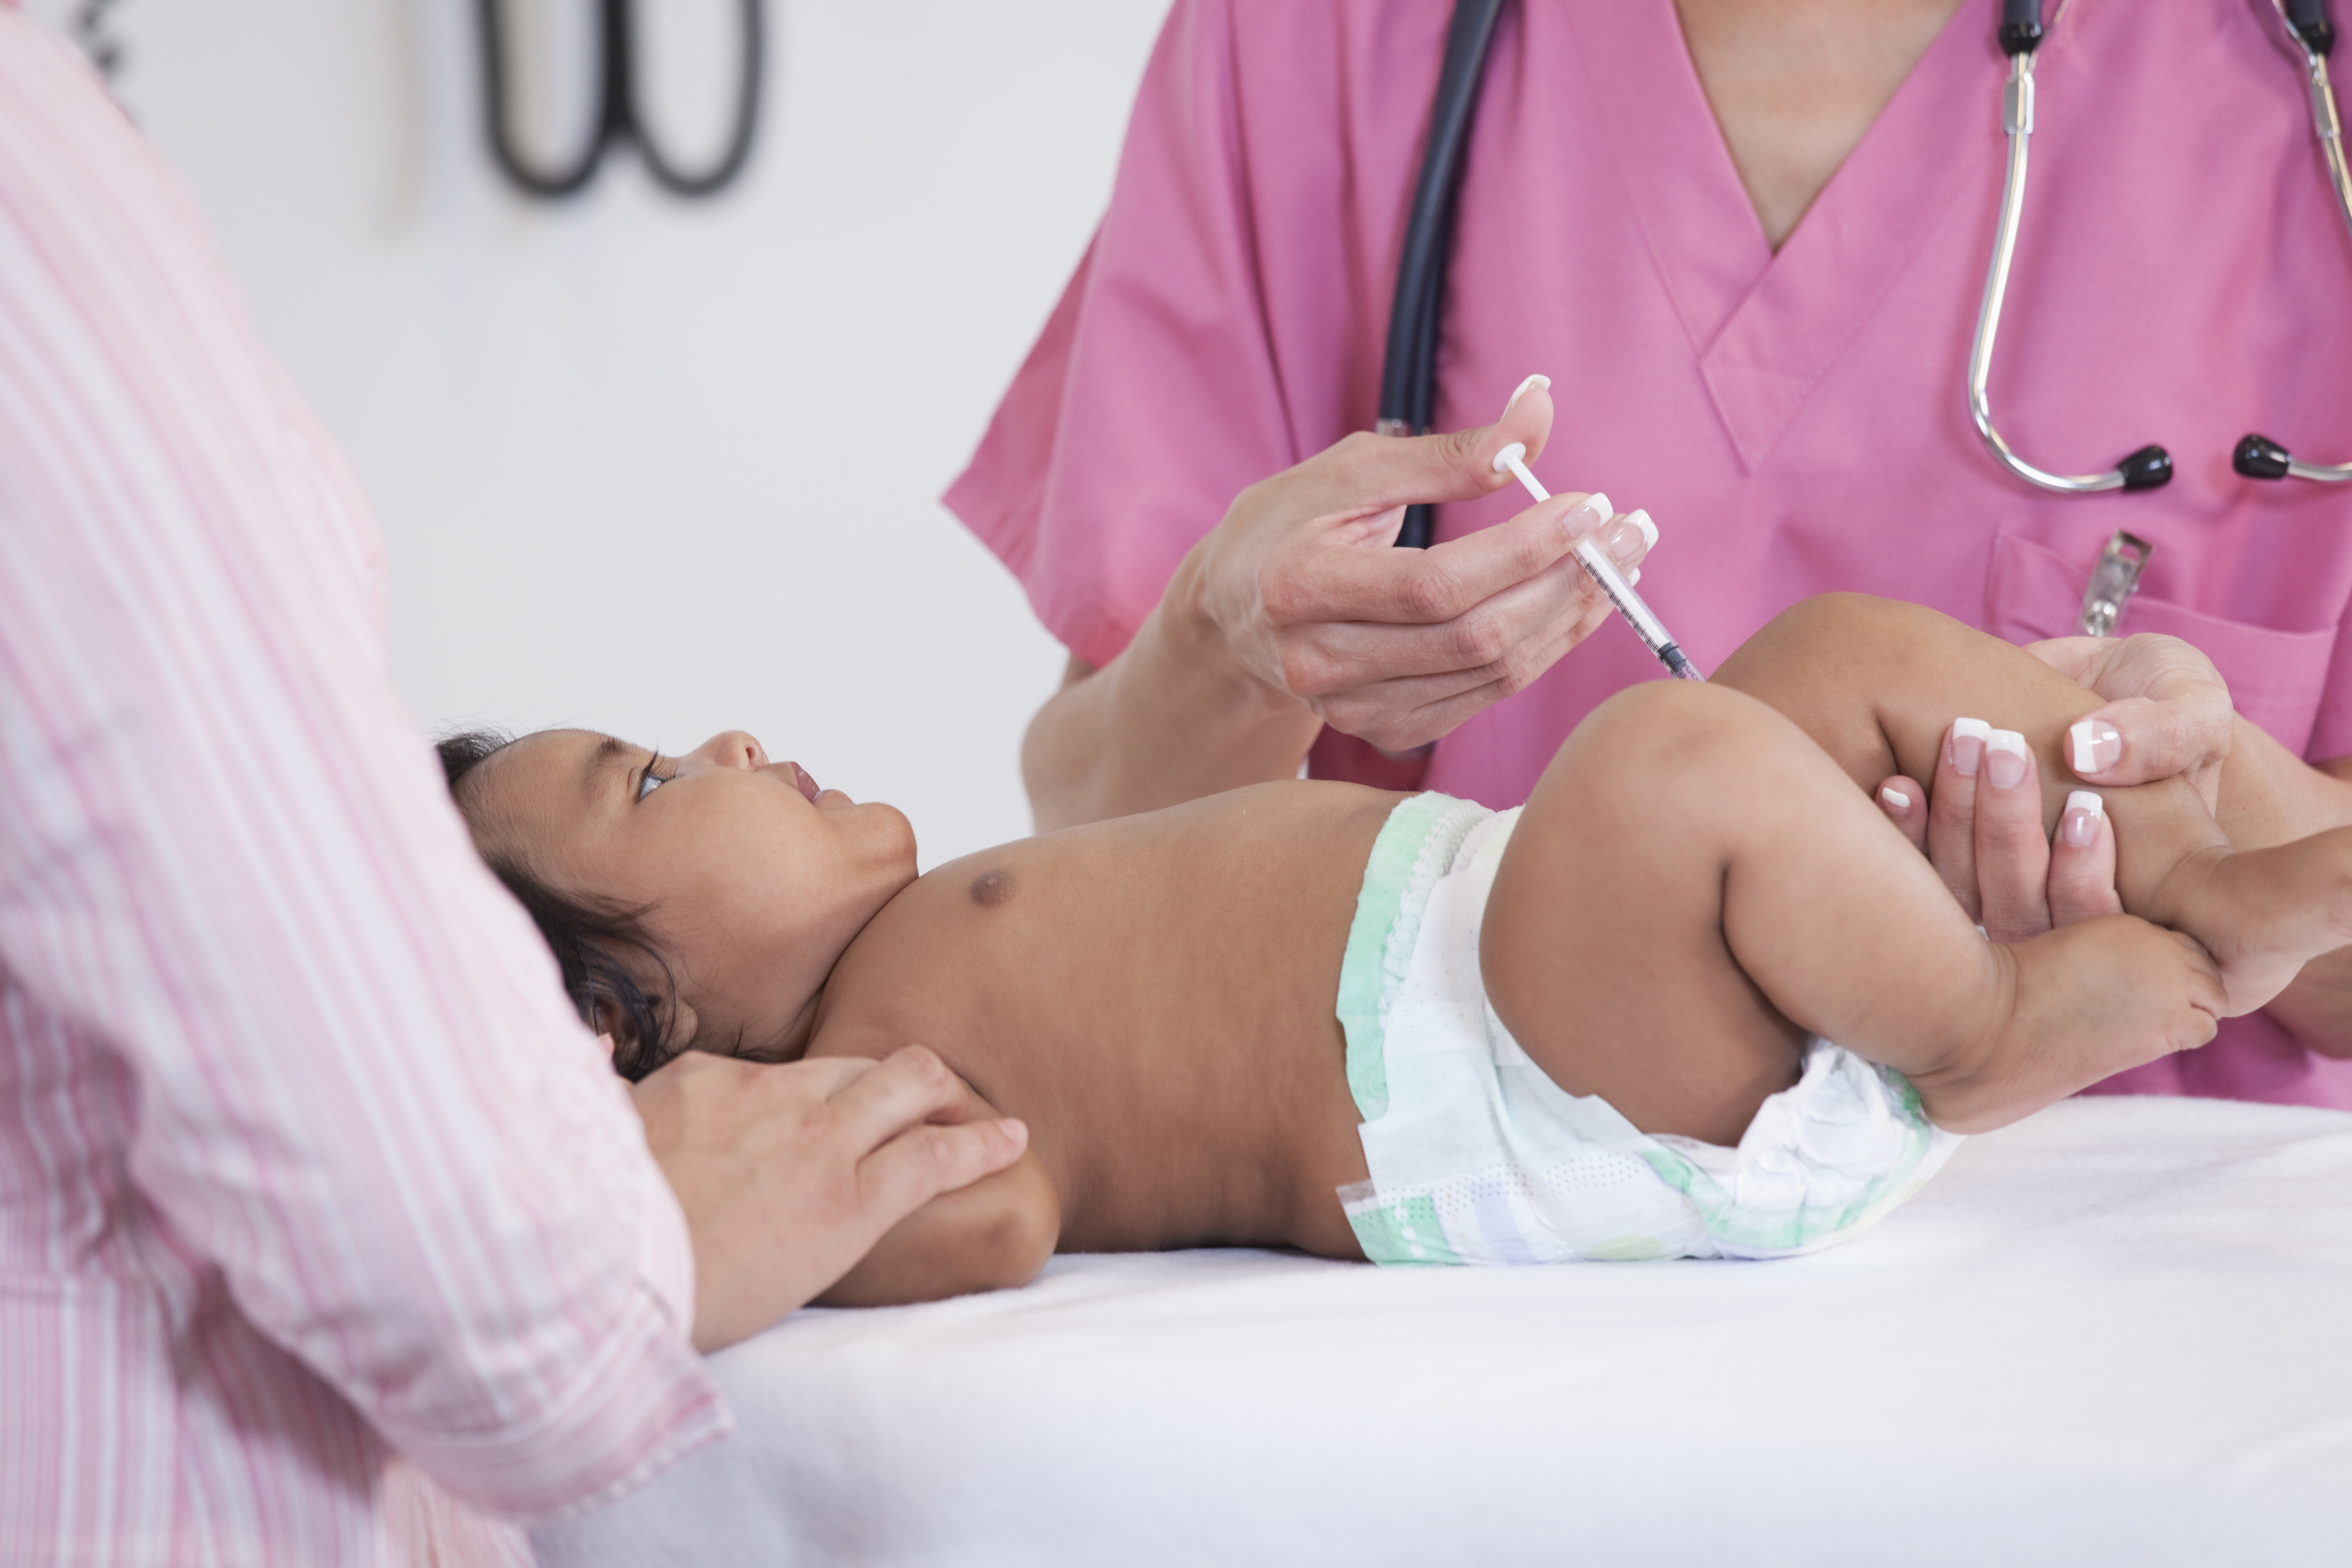 Гепатит в вакцинация новорожденных. Вакцинация новорожденных. Уколы детям. Прививка новорожденным. Прививка в роддоме новорожденным.